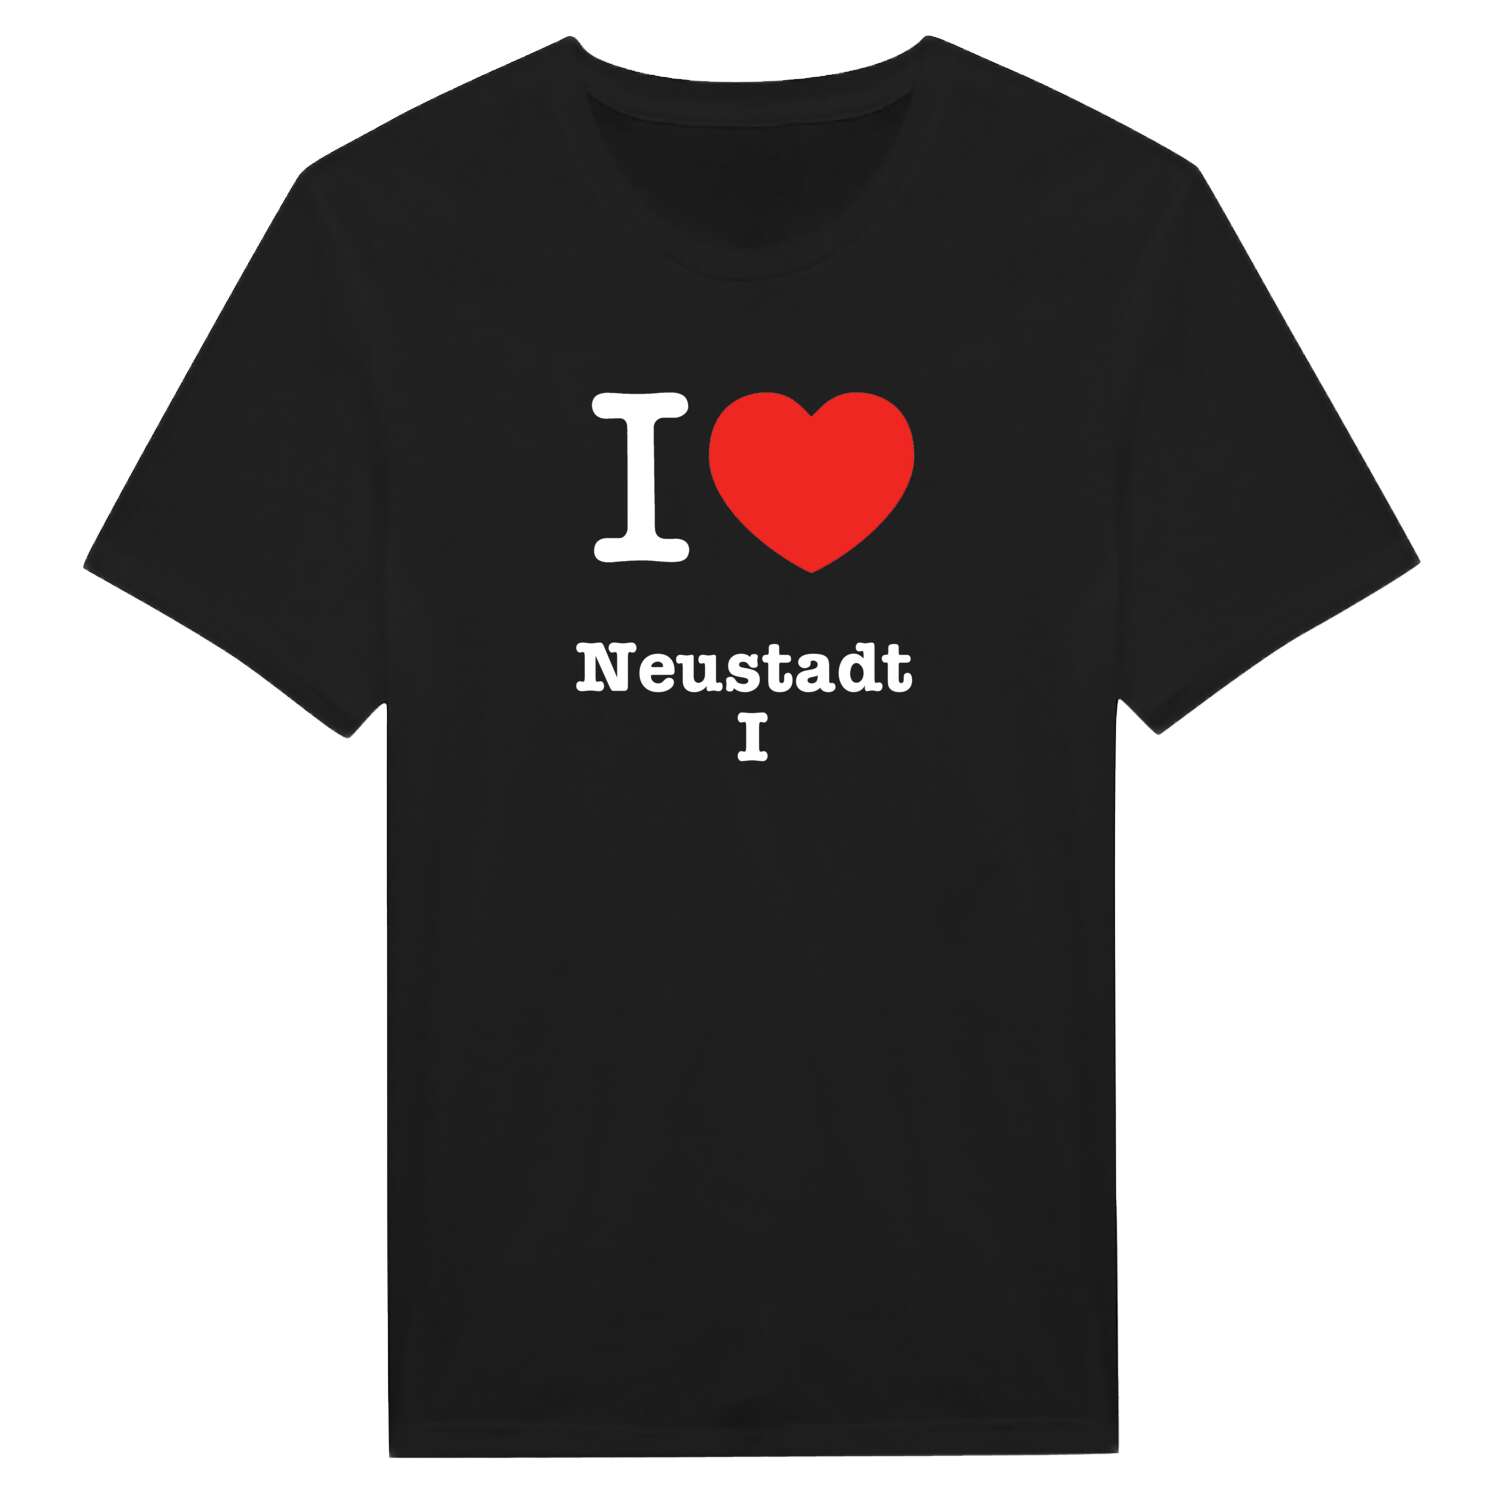 Neustadt I T-Shirt »I love«